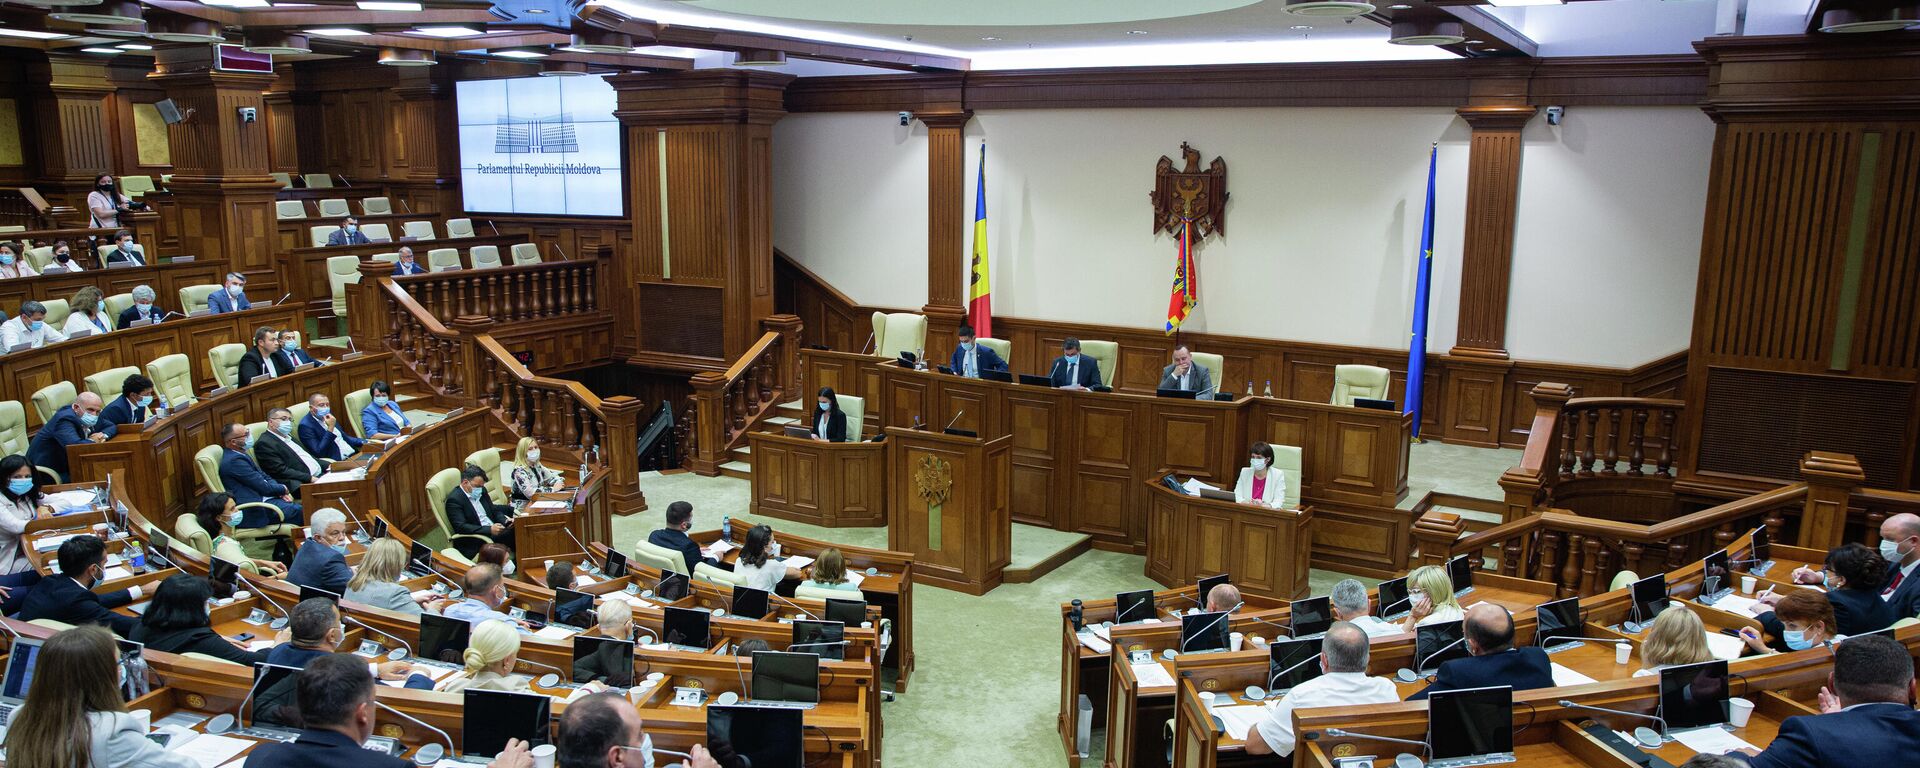 Deputați în Parlamentul Republicii Moldova  - Sputnik Moldova, 1920, 13.08.2021